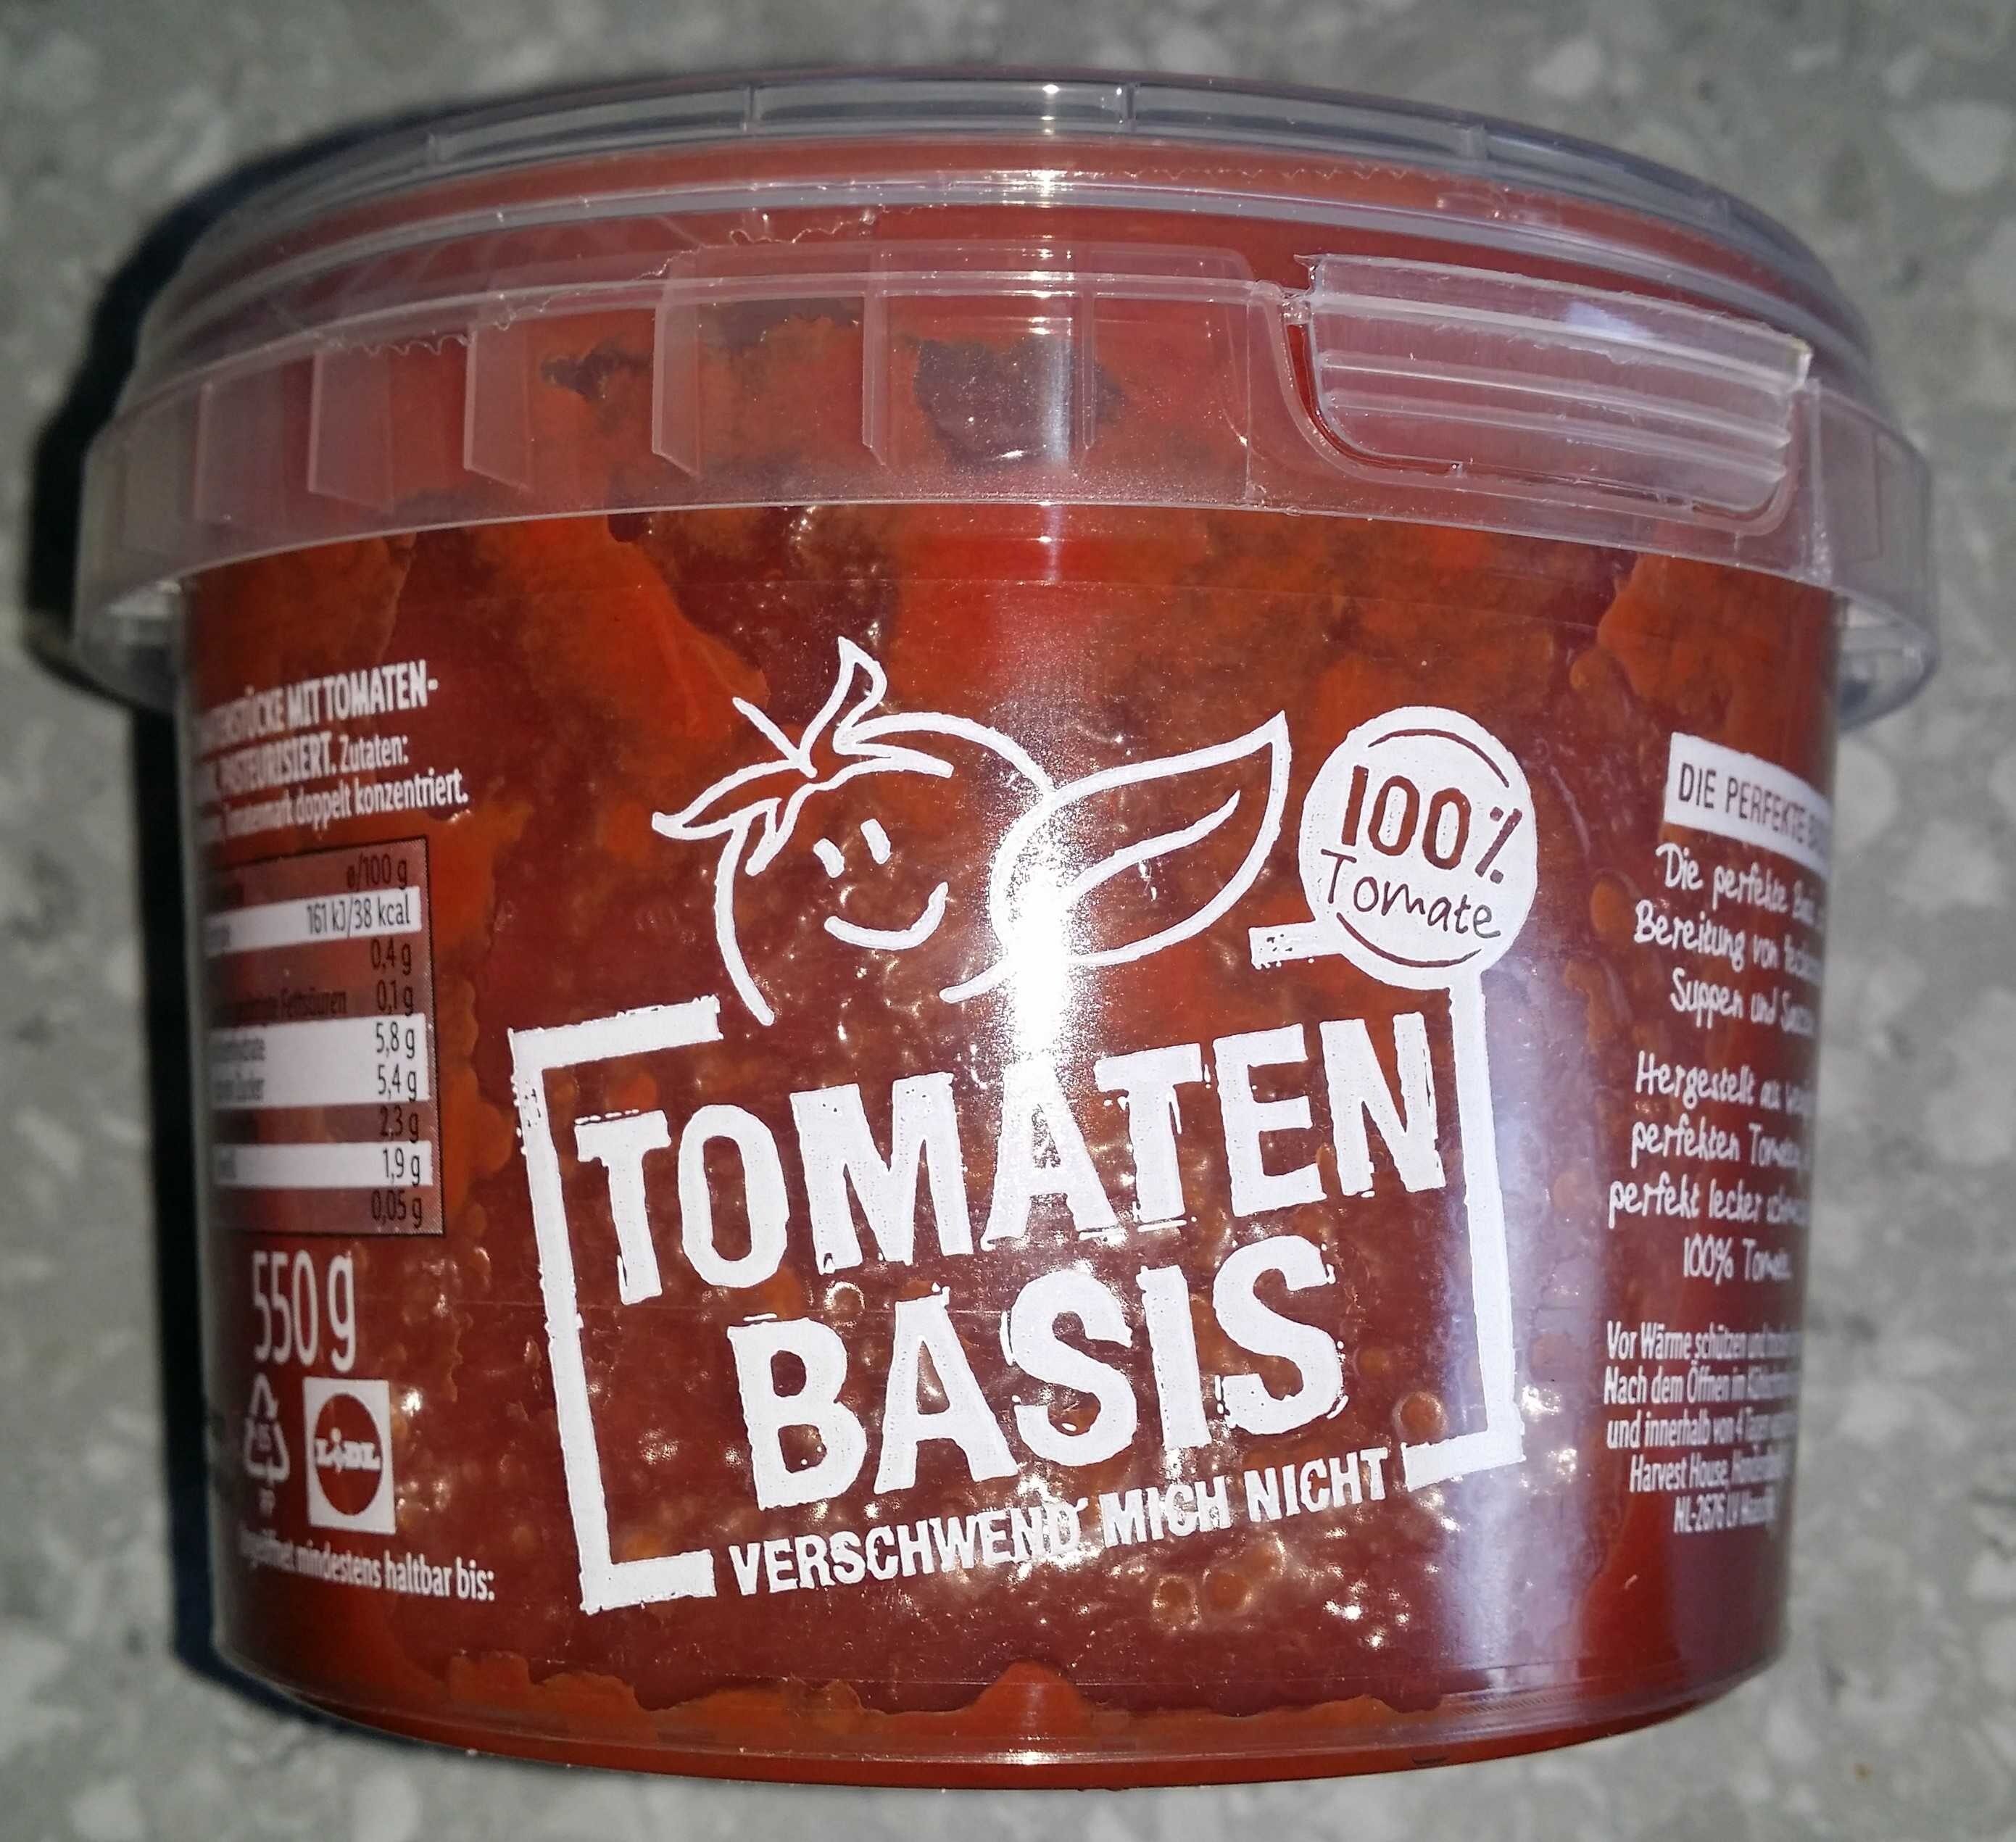 Tomaten Basis - Product - en